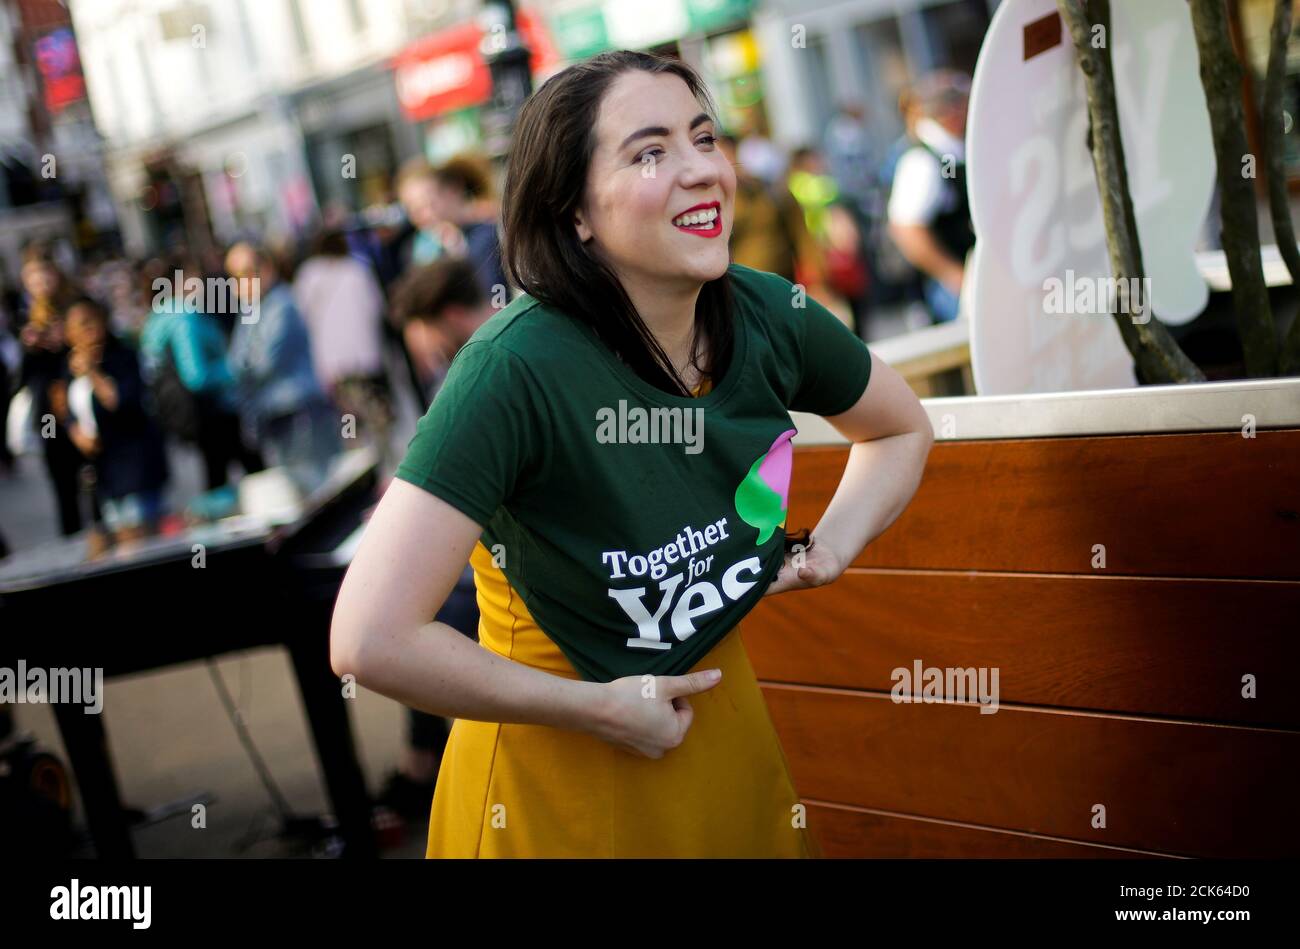 Una mujer viste una camiseta mientras Irlanda celebra un referéndum sobre la iberalización de las leyes de aborto, en Dublín, Irlanda, el 25 de mayo de 2018. REUTERS/Max Rossi Foto de stock